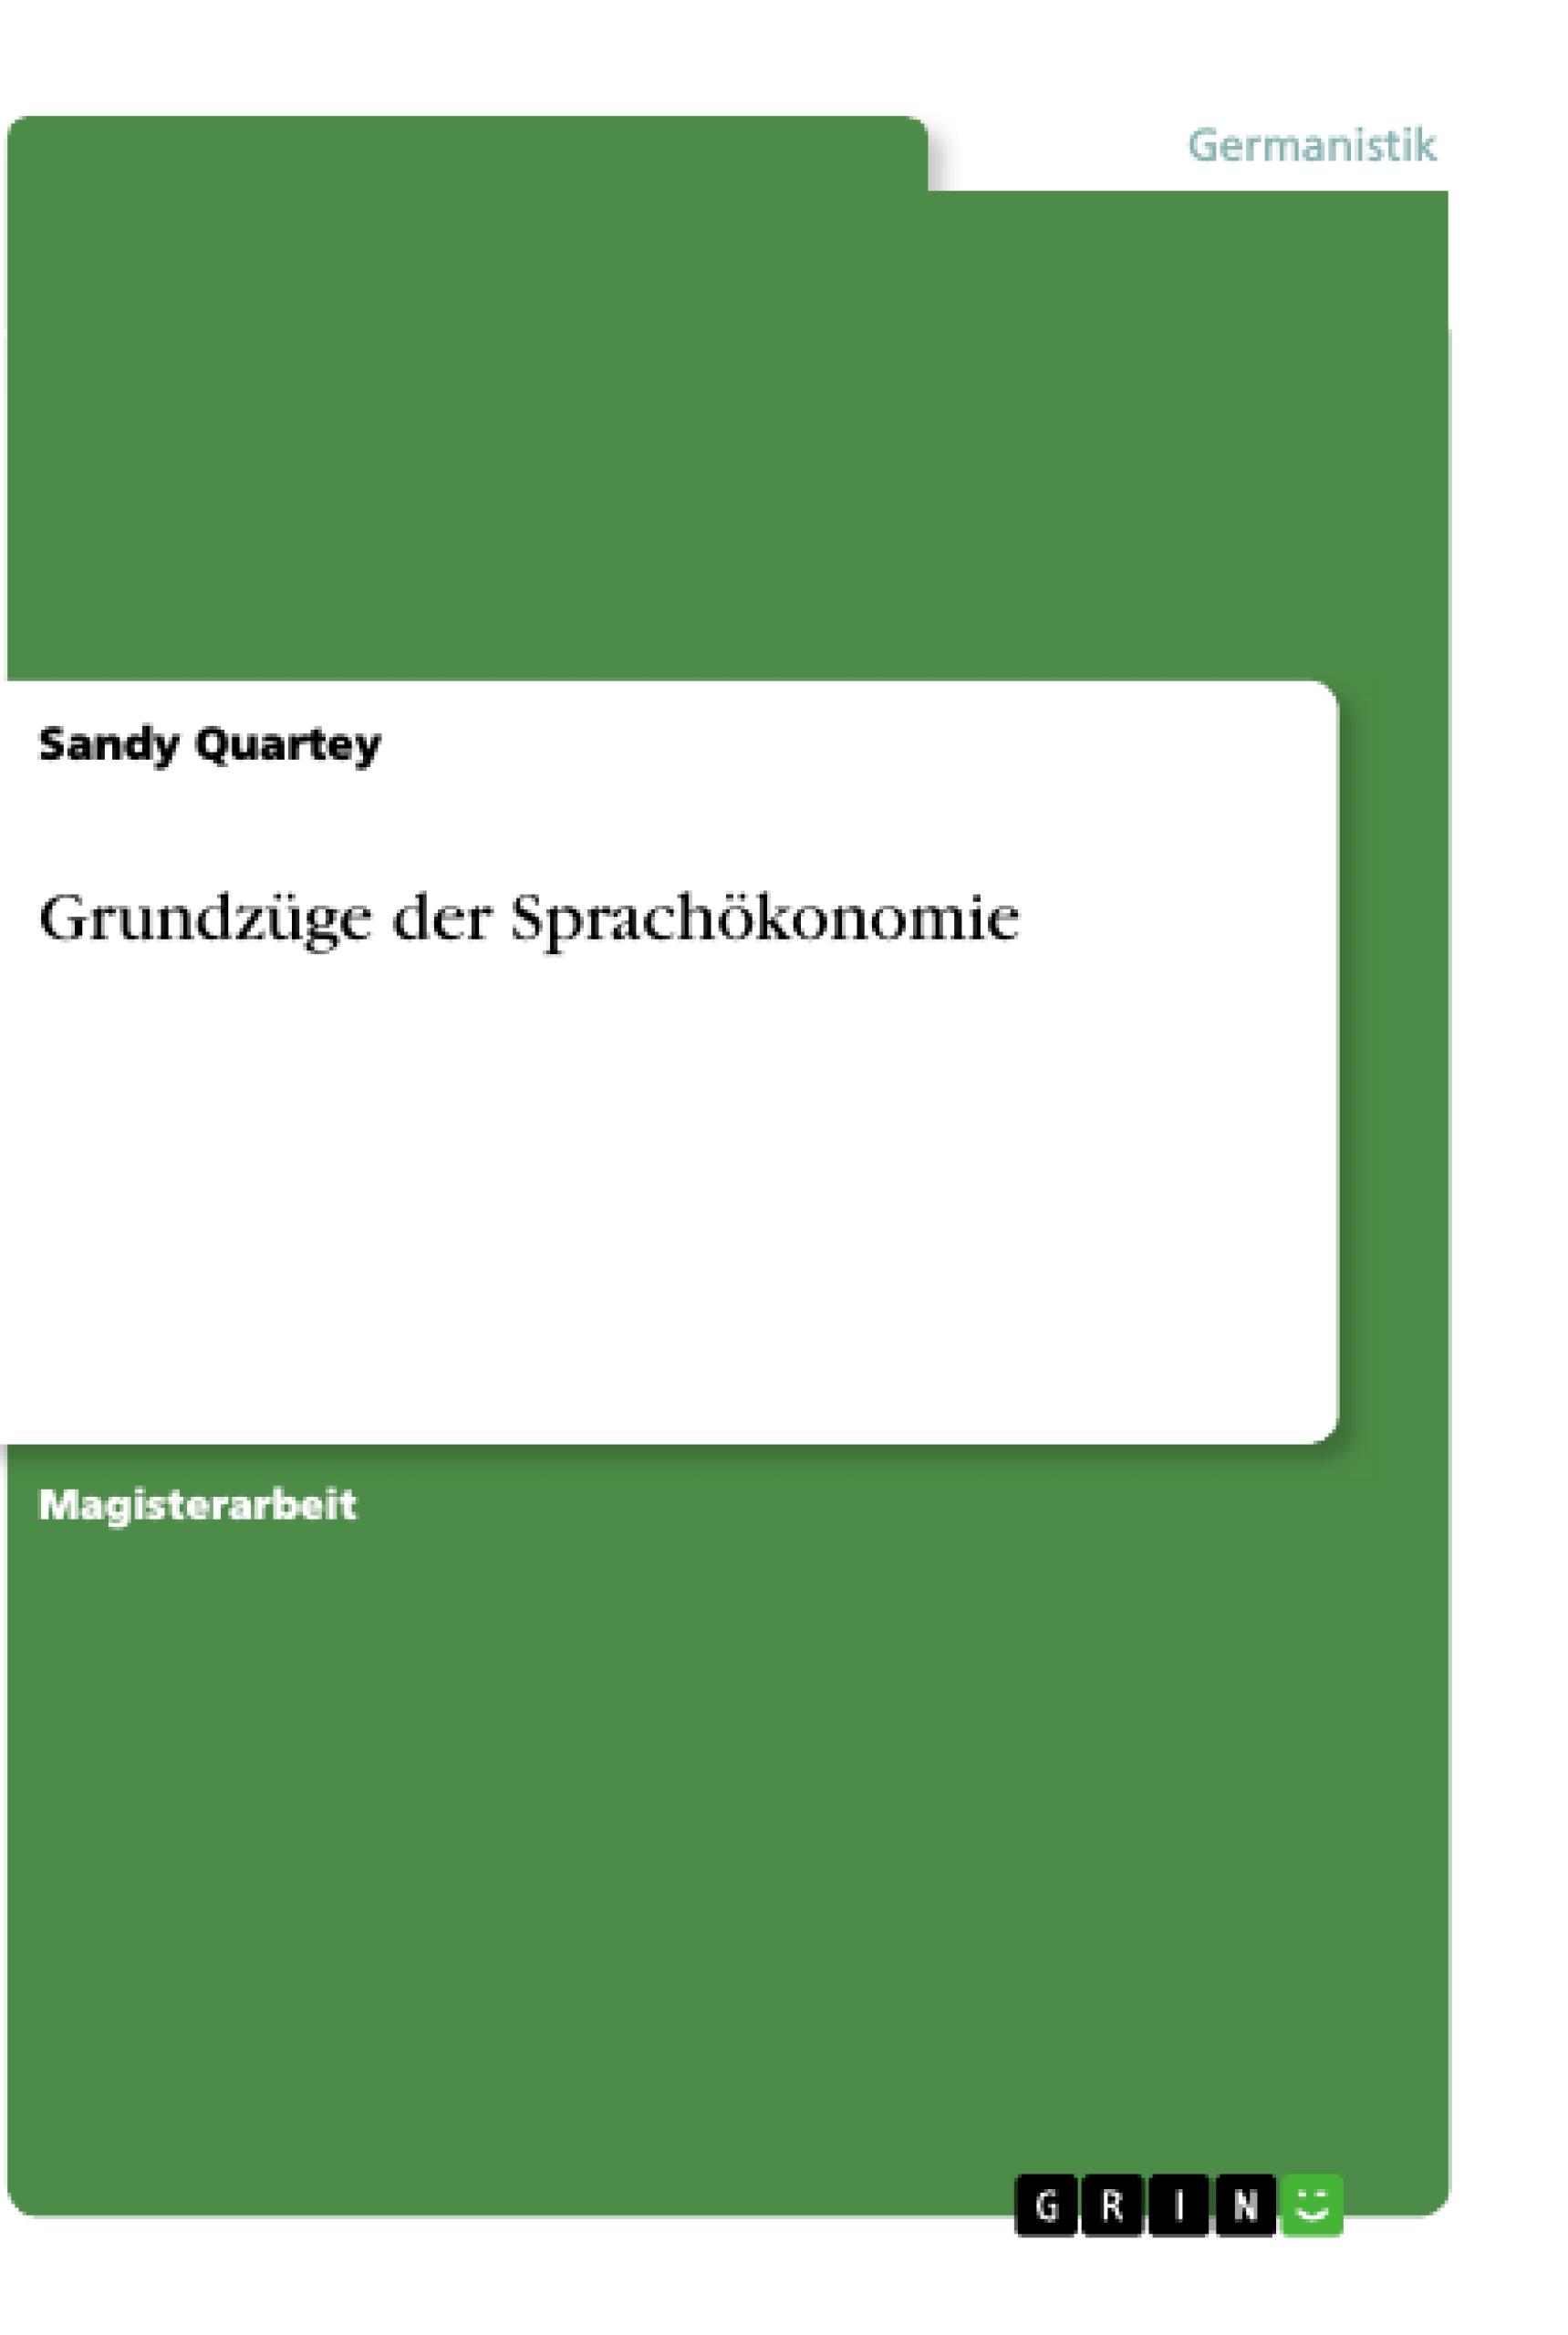 Grundzuege der Sprachoekonomie - Quartey, Sandy